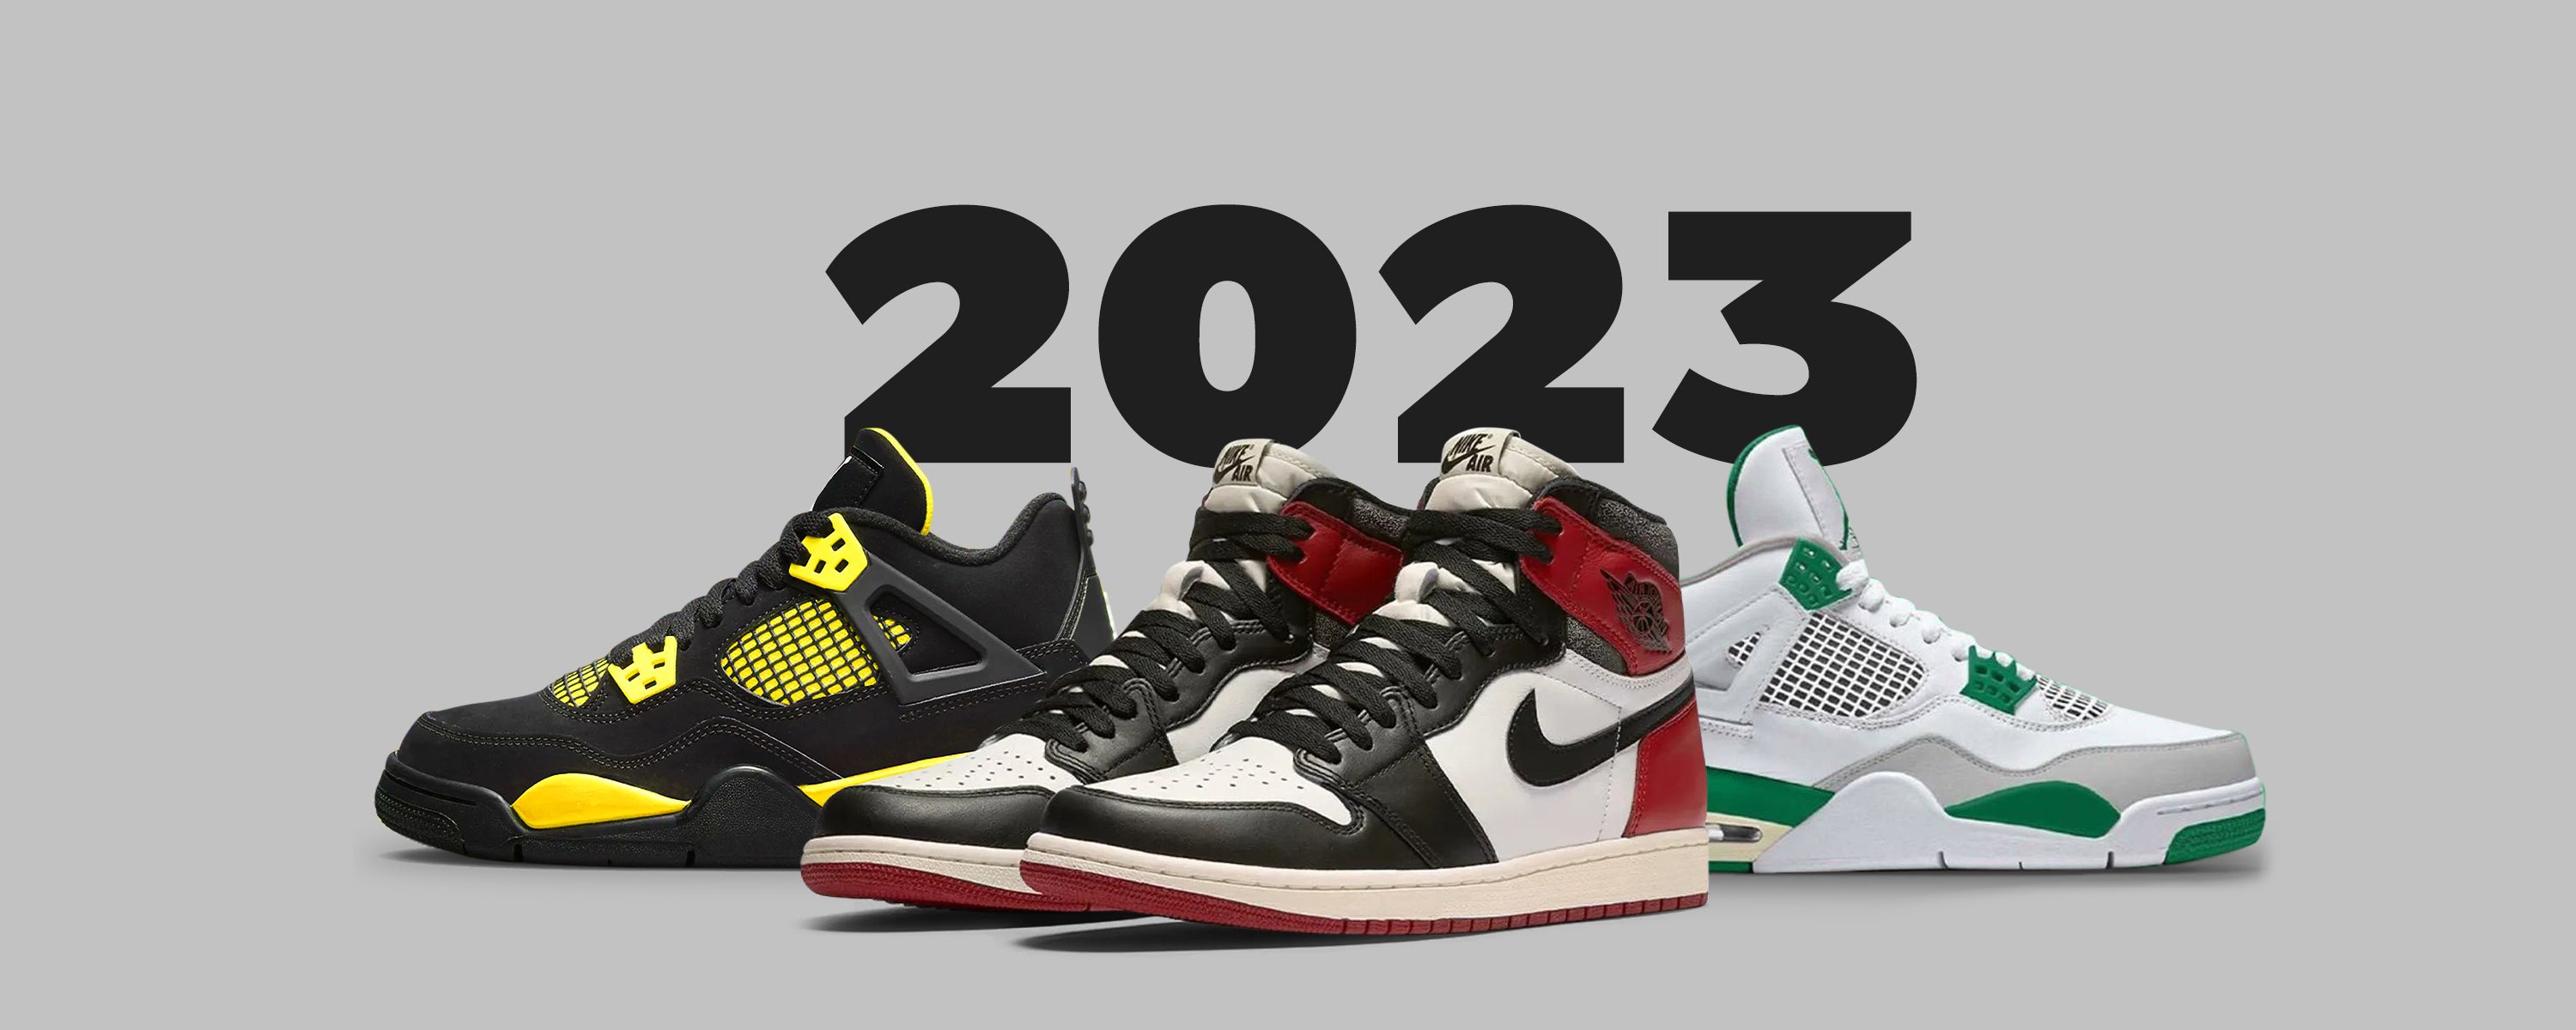 Air Jordan Release Dates 2023